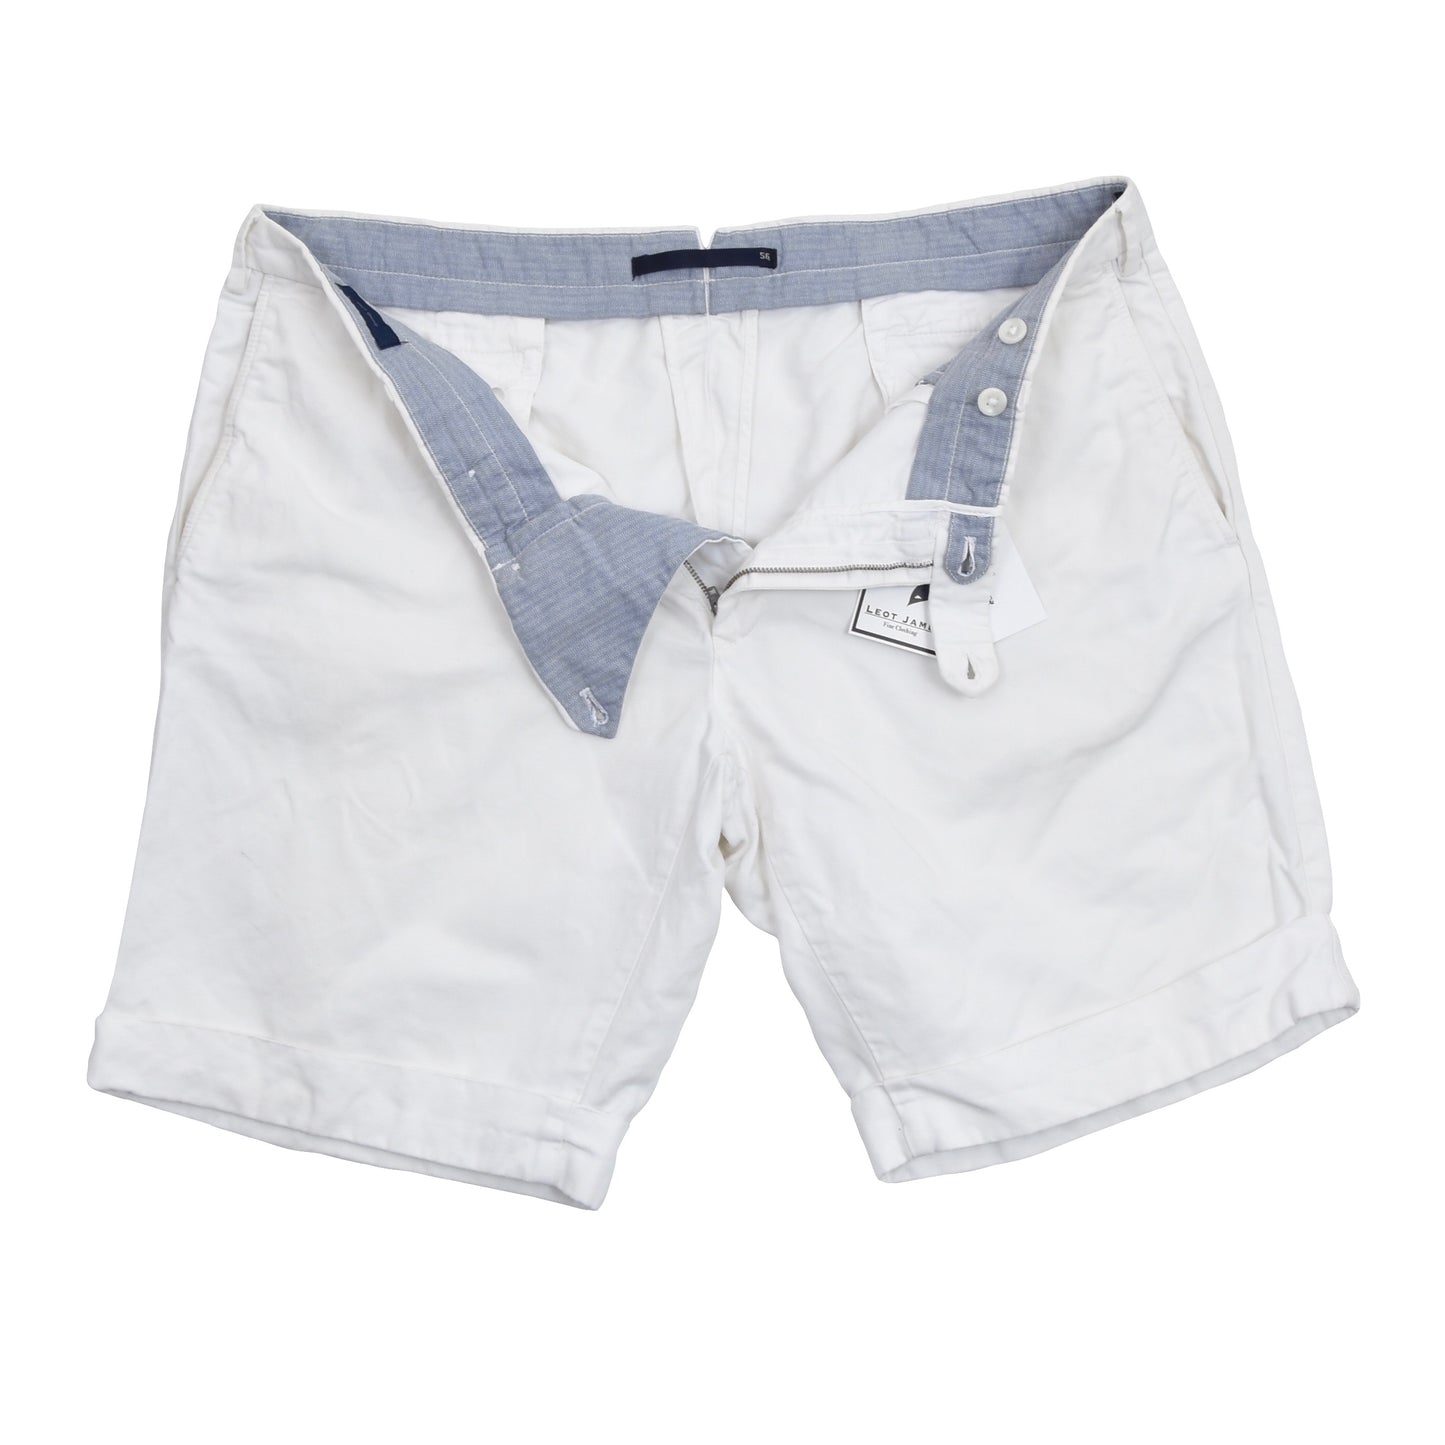 Incotex Chinolino Leinen/Baumwolle Shorts Größe 56 - Weiß